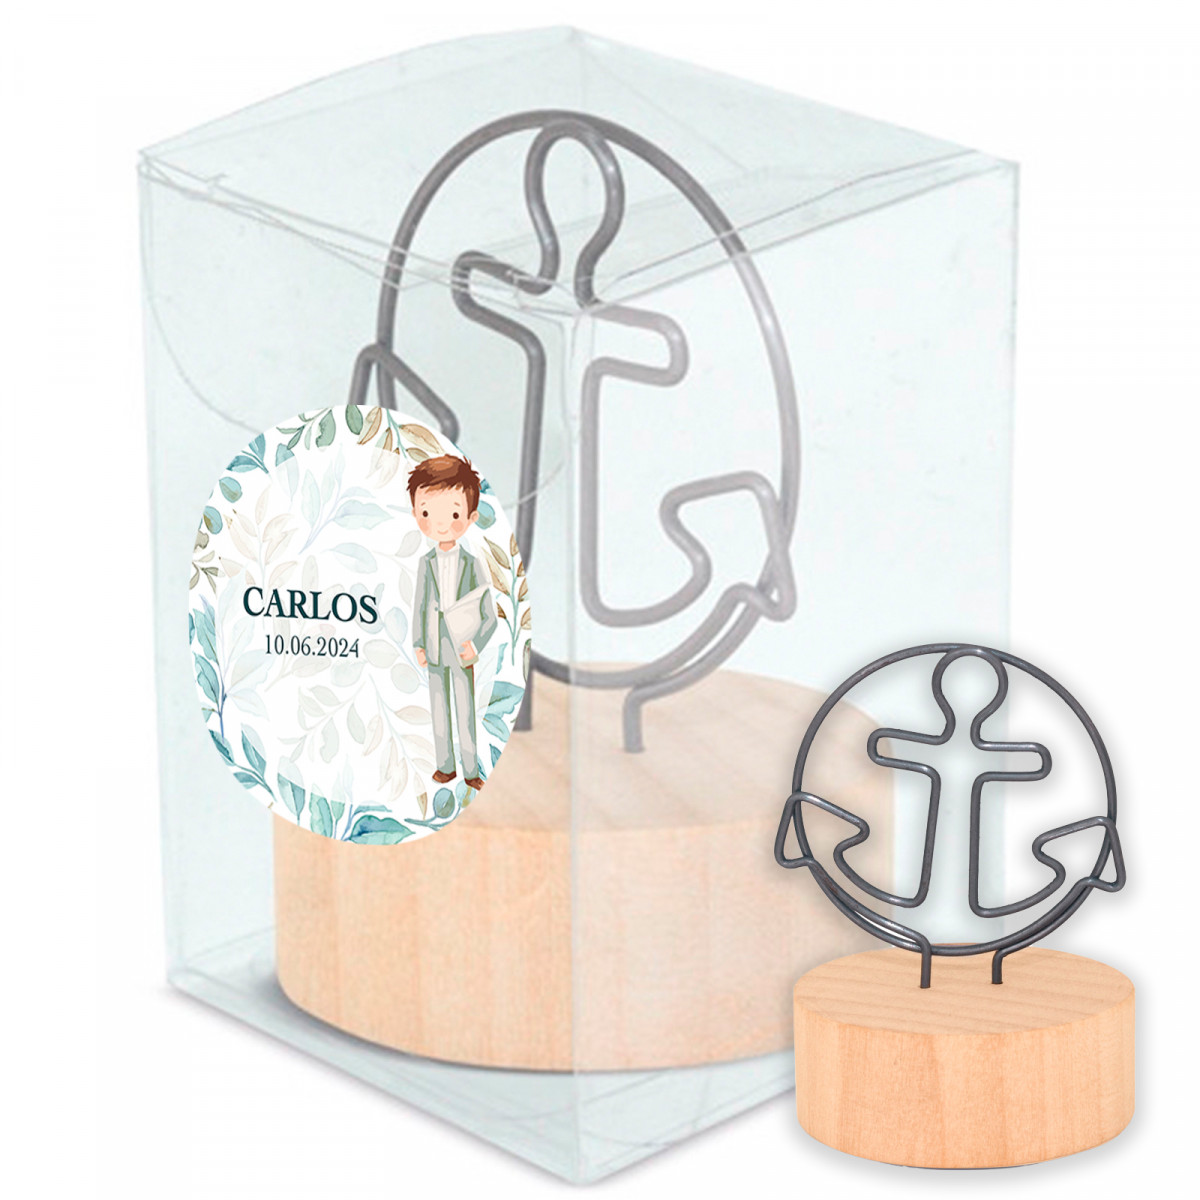 Clip avec support en bois dans une boîte personnalisée pour les détails de la communion des enfants